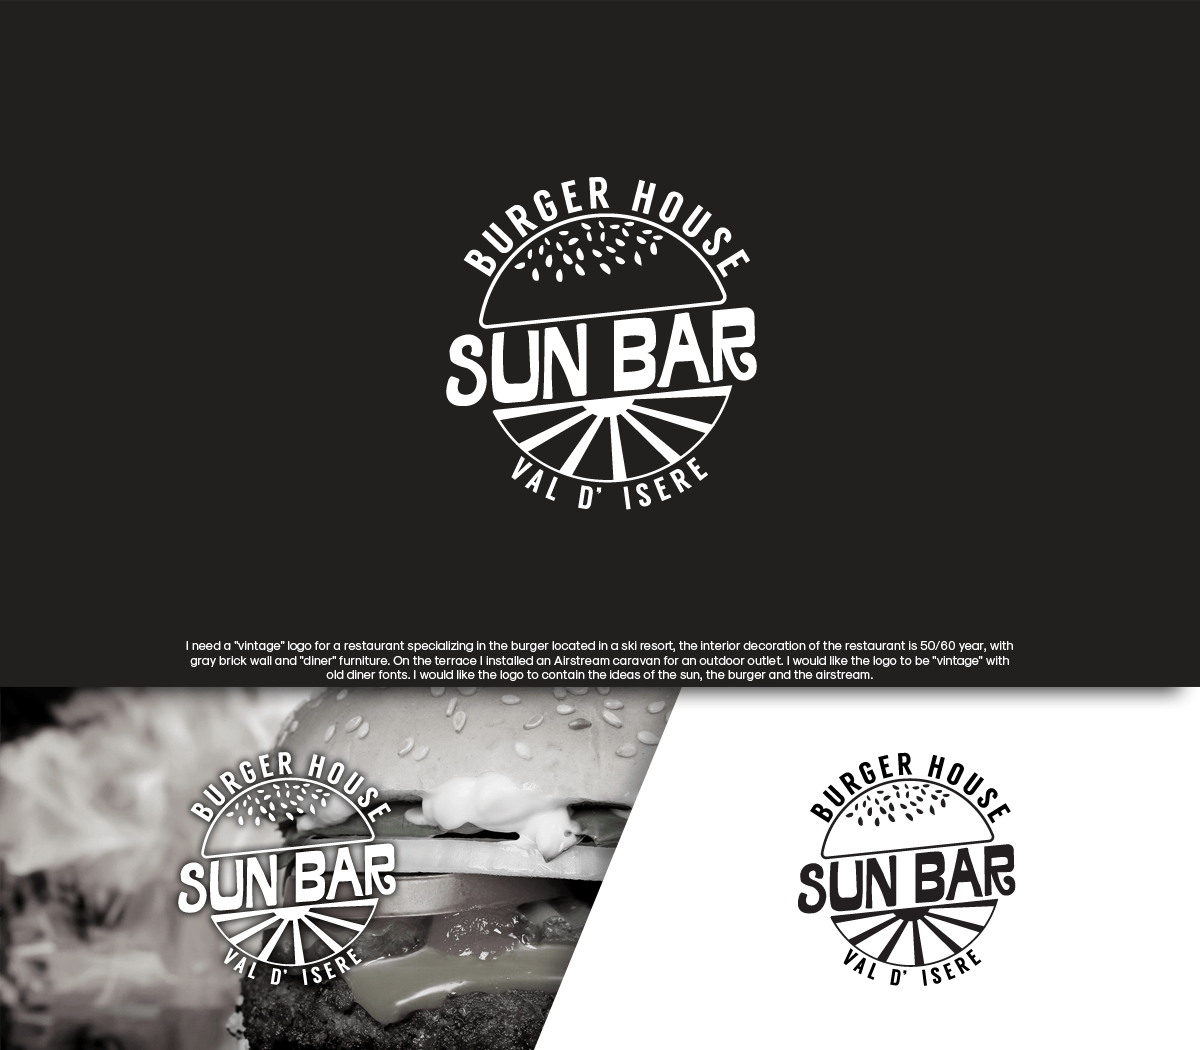 Sun Restaurant Logo - Restaurant Logo Design for Sun Bar. Burger house. Valley of Isere by ...